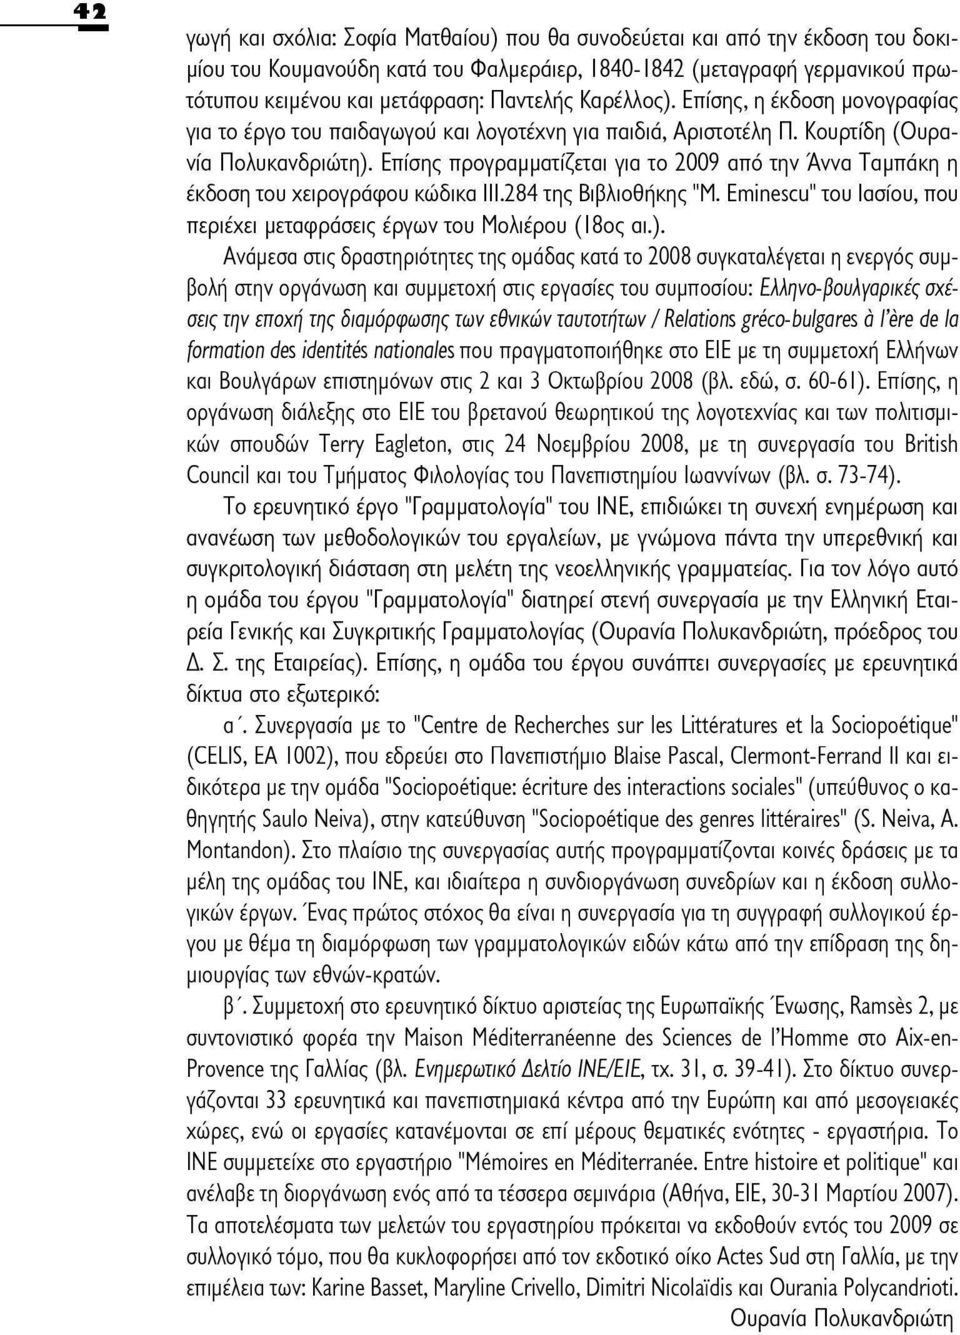 Επίσης προγραμματίζεται για το 2009 από την Άννα Ταμπάκη η έκδοση του χειρογράφου κώδικα 111.284 της Βιβλιοθήκης "M. Eminescu" του Ιασίου, που περιέχει μεταφράσεις έργων του Μολιέρου (18ος αι.).